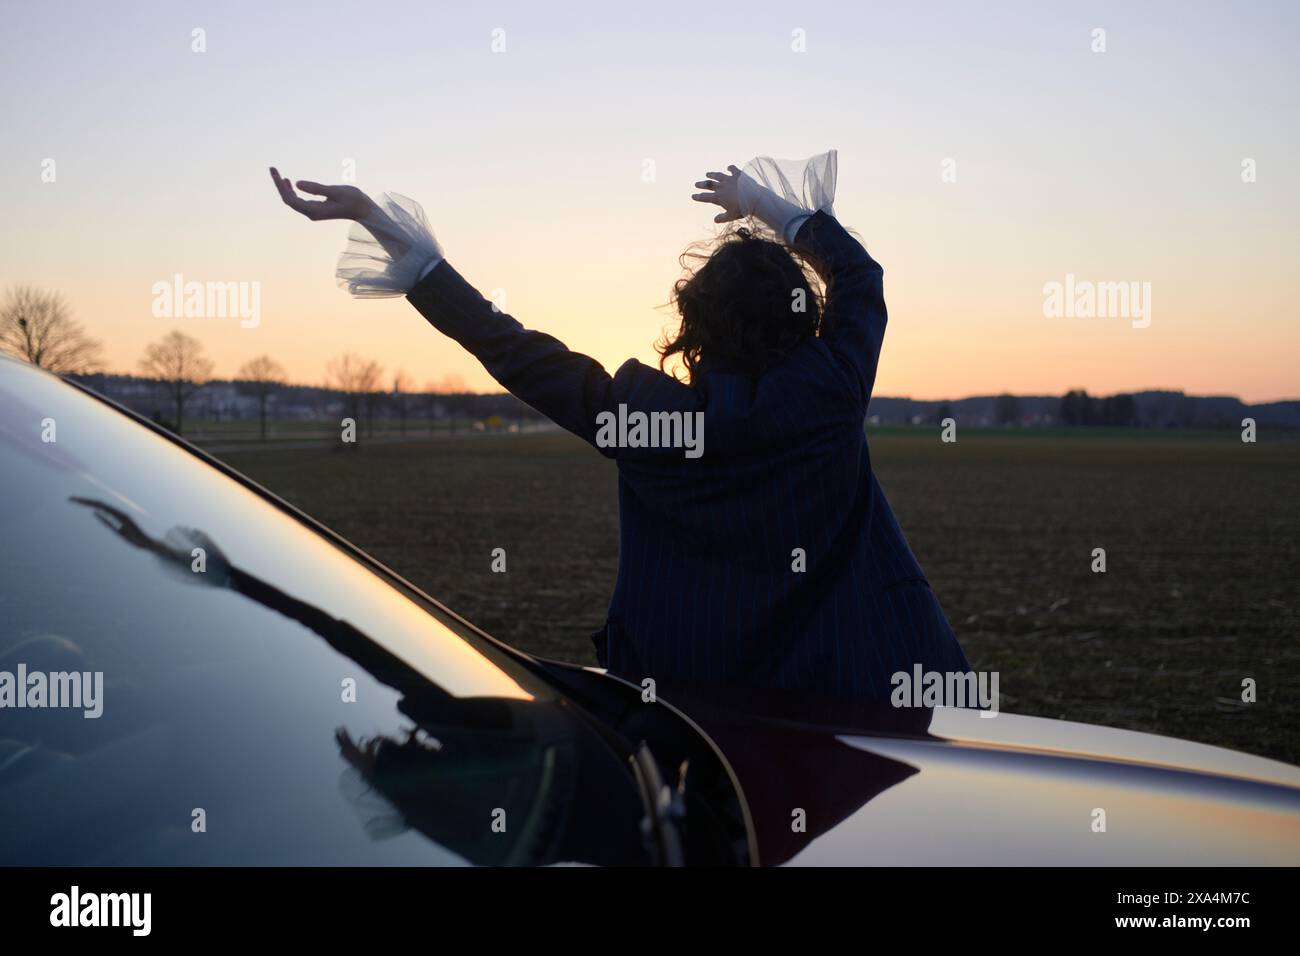 Une personne se tient dos à la caméra, les bras levés d'un geste gracieux, à côté d'une voiture au crépuscule sous un ciel ouvert. Banque D'Images